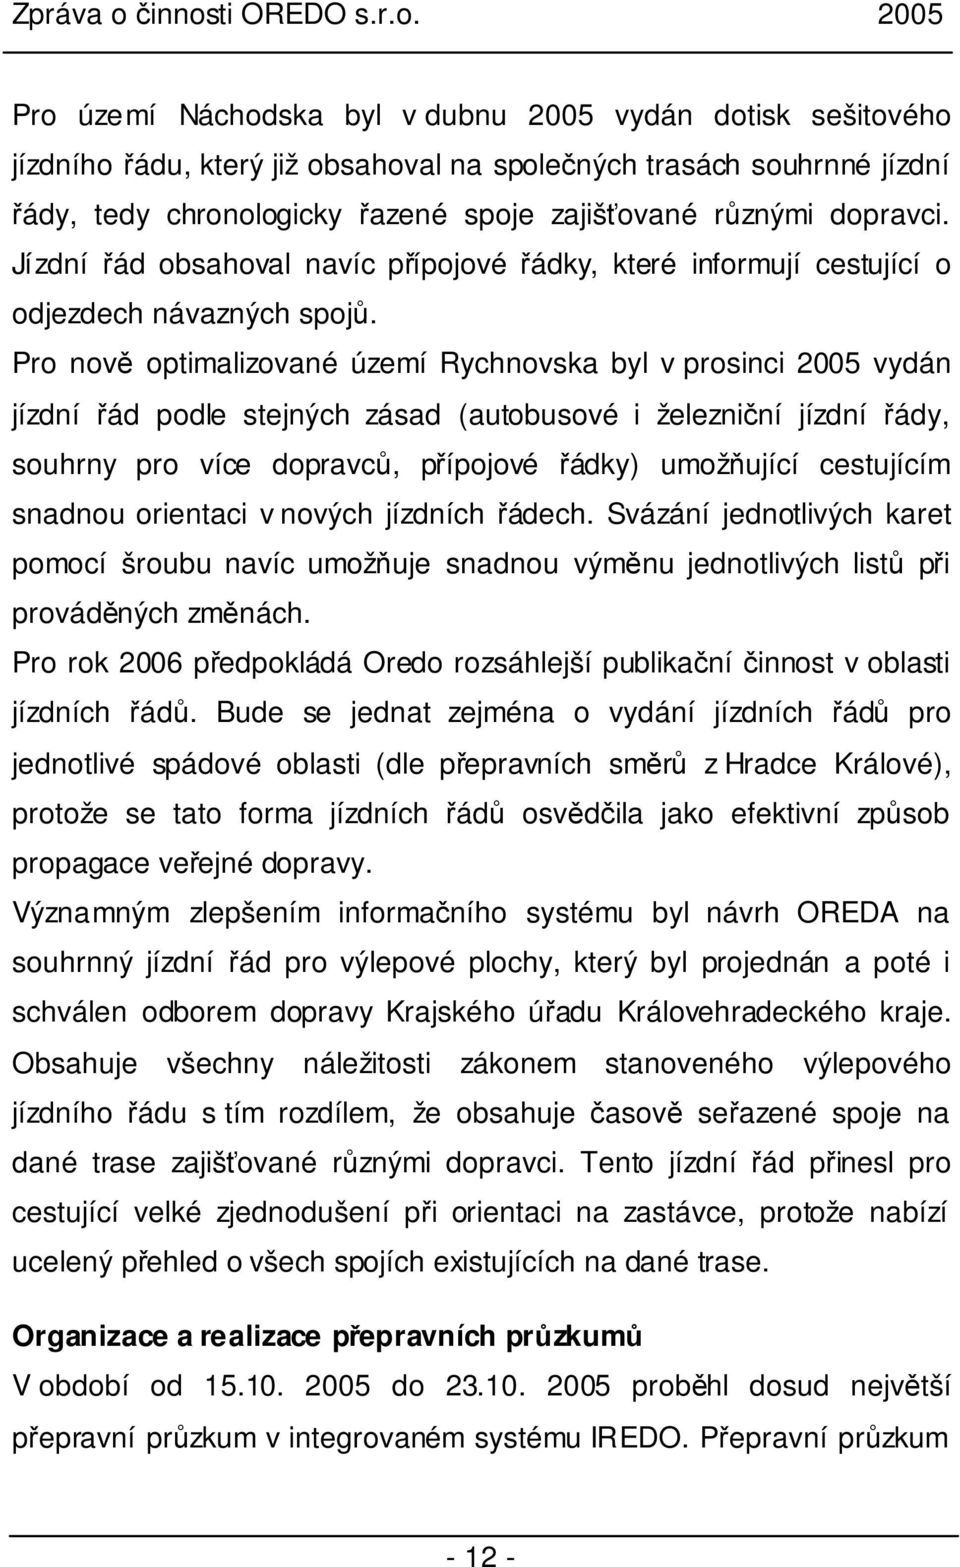 Pro nově optimalizované území Rychnovska byl v prosinci 2005 vydán jízdní řád podle stejných zásad (autobusové i železniční jízdní řády, souhrny pro více dopravců, přípojové řádky) umožňující